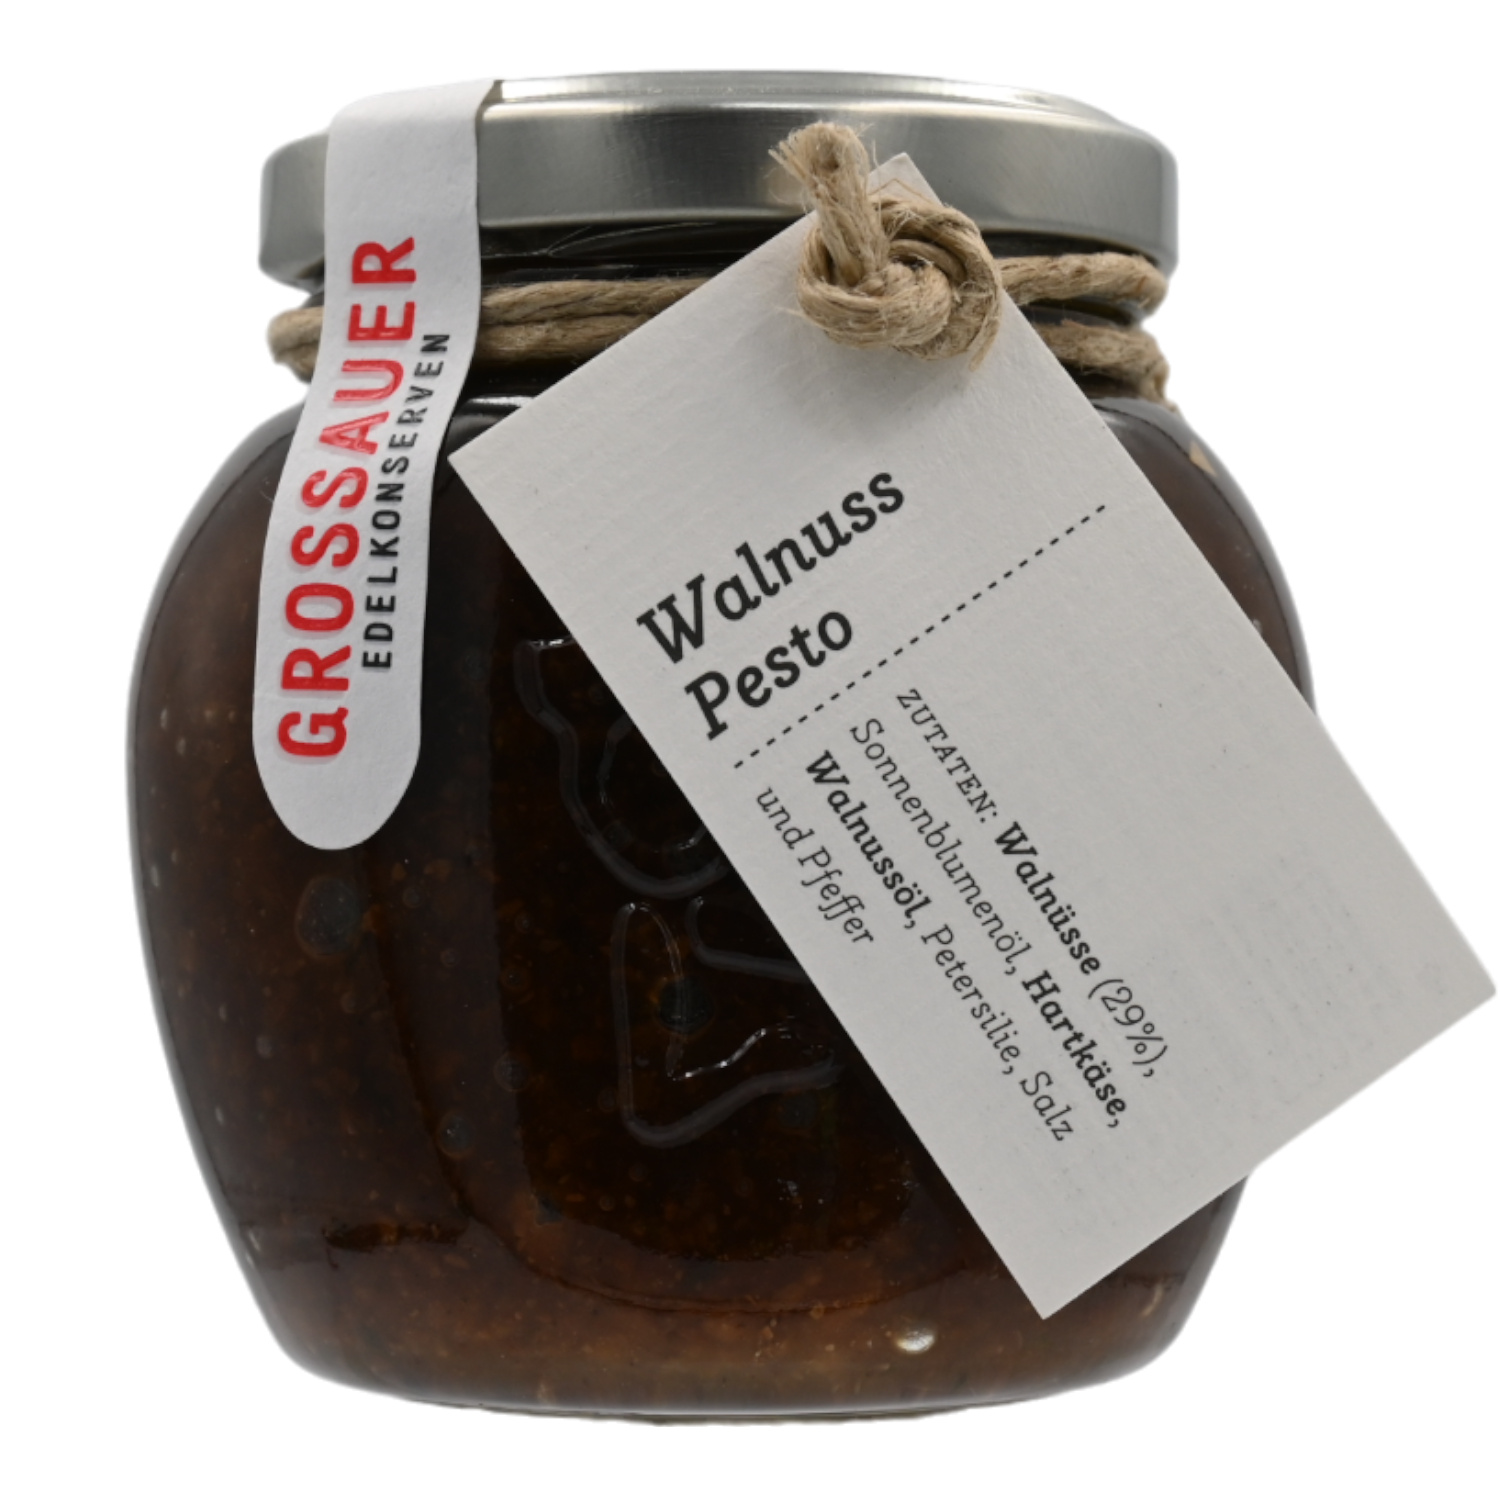 Walnuss Pesto, Grossauer Edelkonserven 0,18 kg